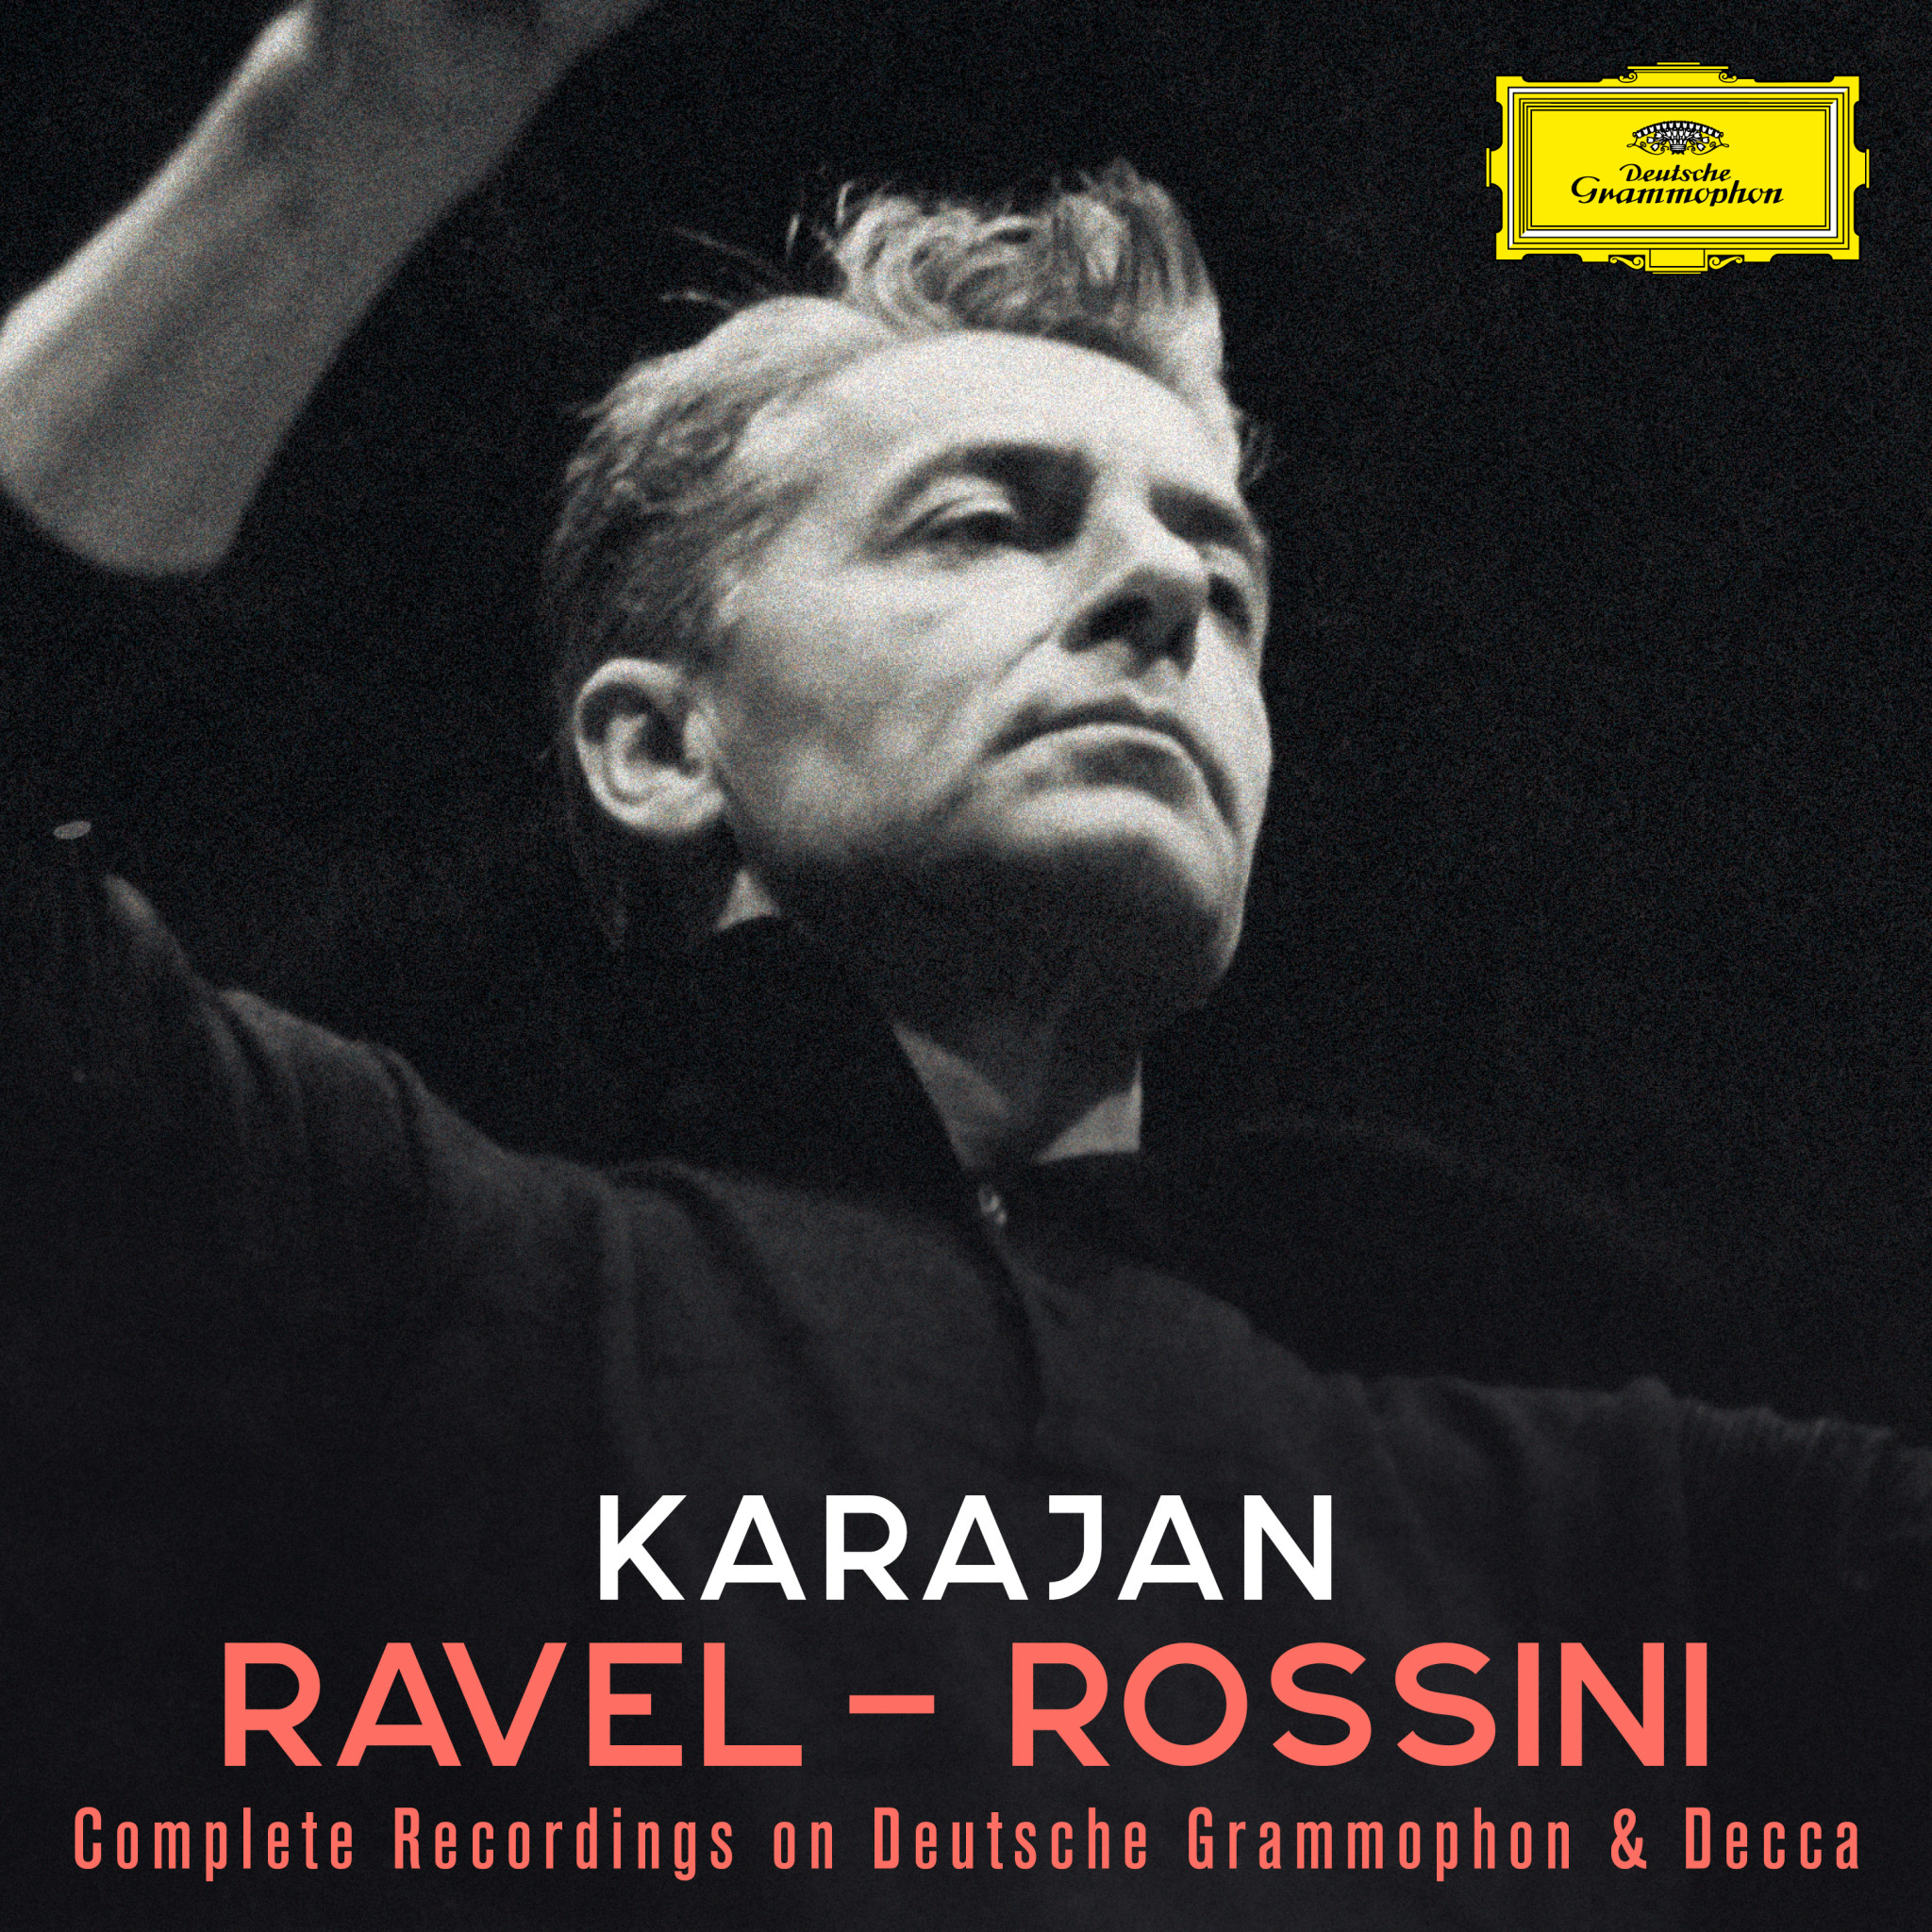 Karajan: Ravel - Rossini